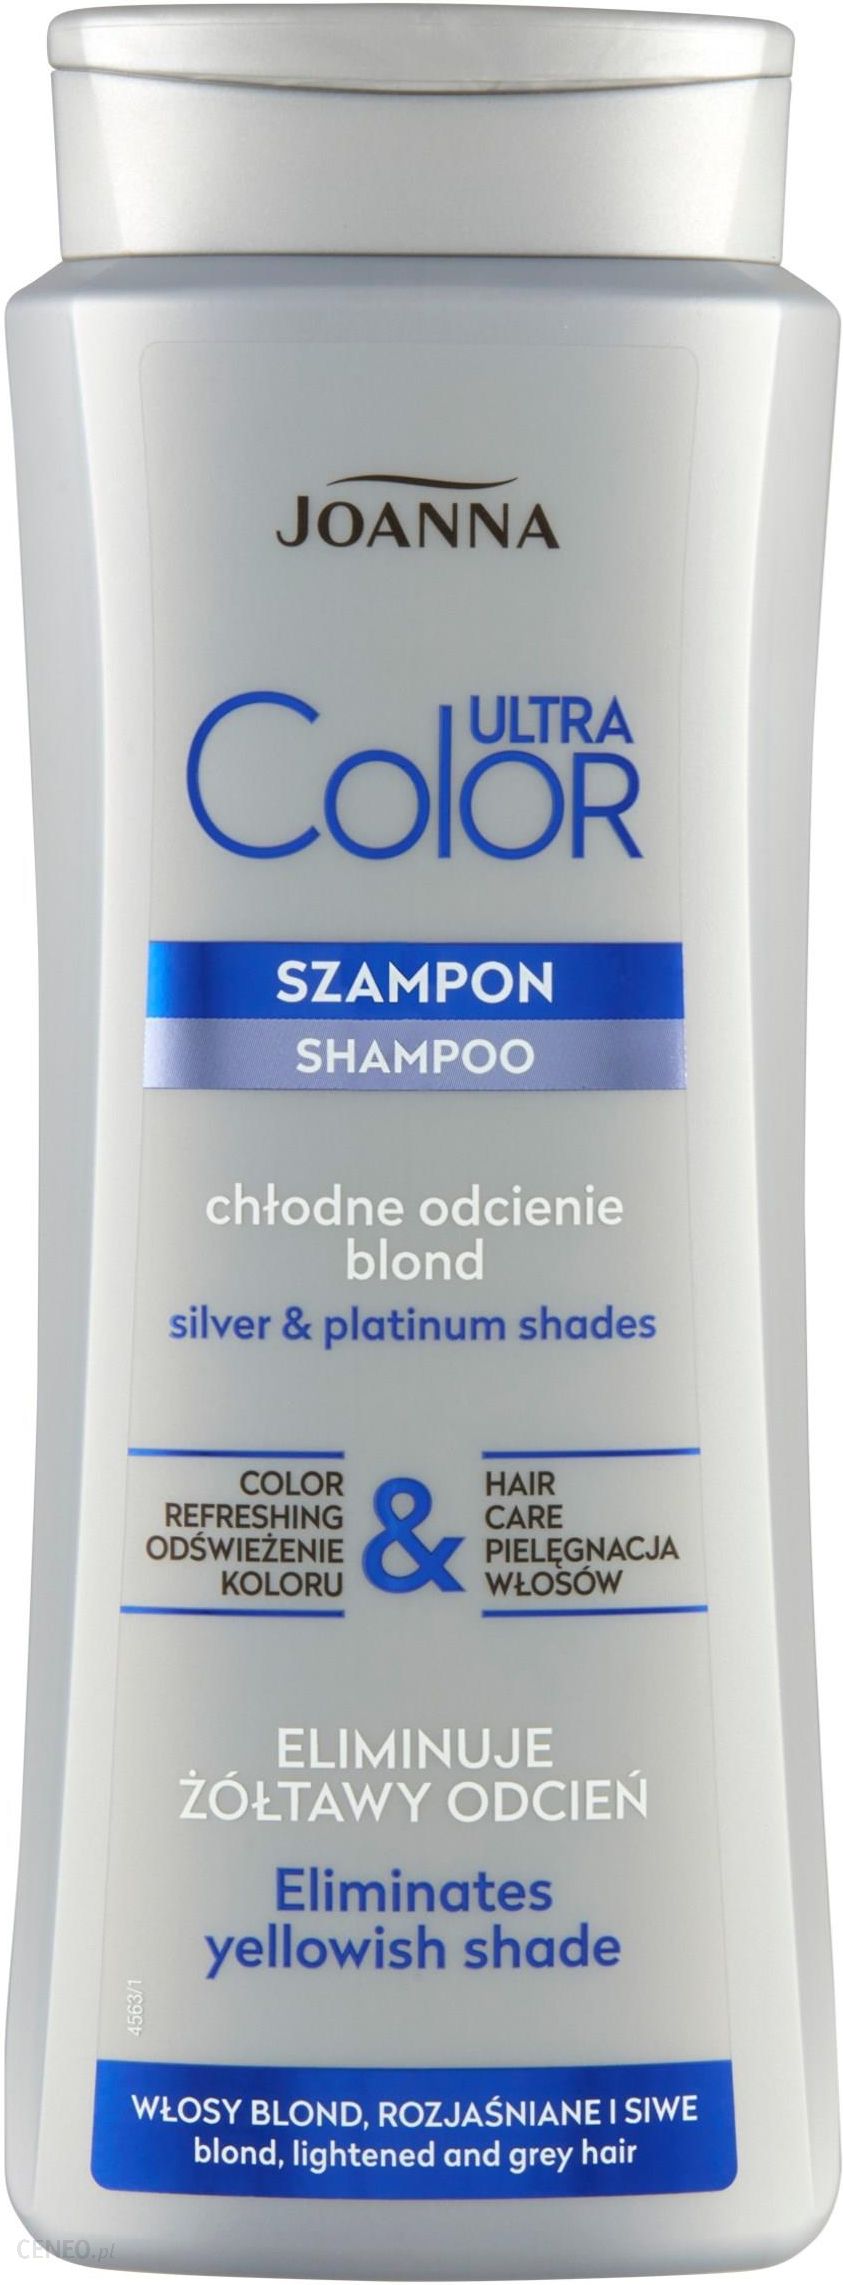 szampon do włosów farbowanych blond joanna